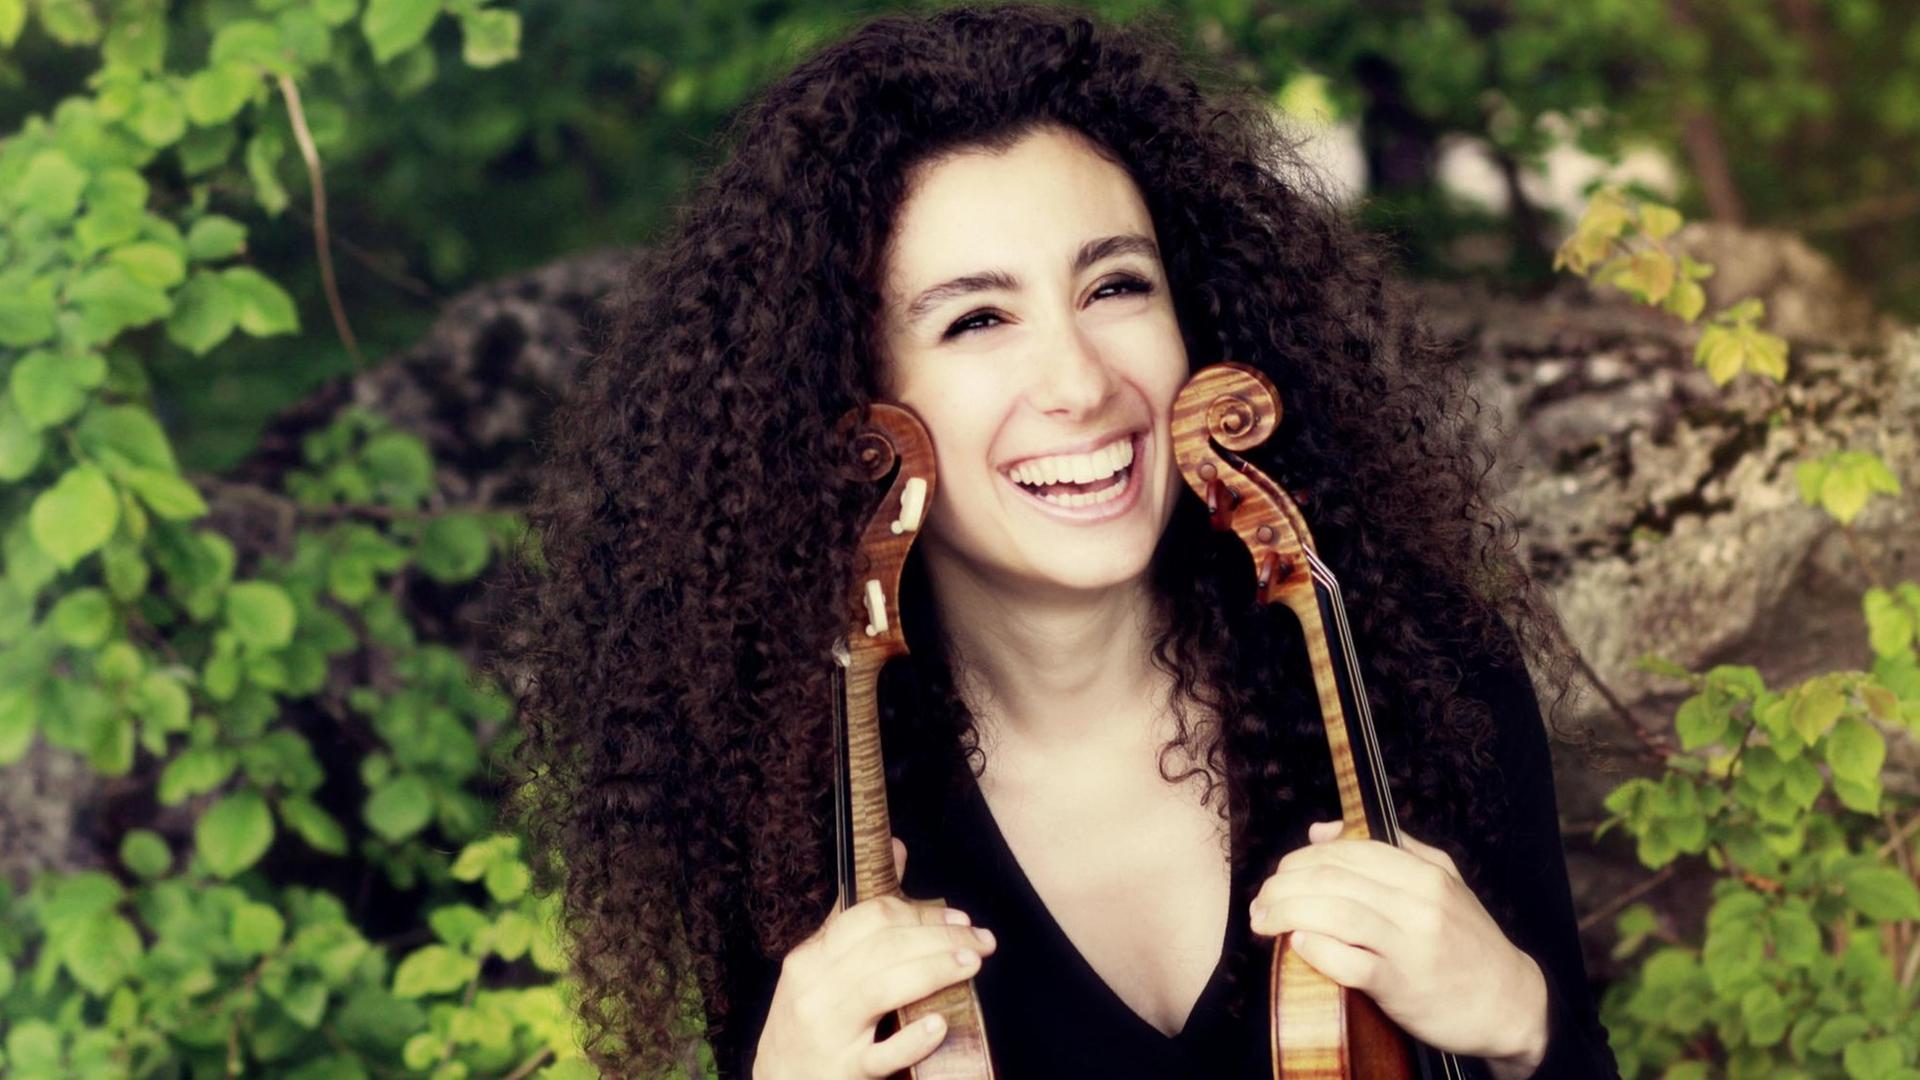 Eine lachende junge Frau mit langen schwarzen lockigen Haaren hält zwei Violinen in den Händen.